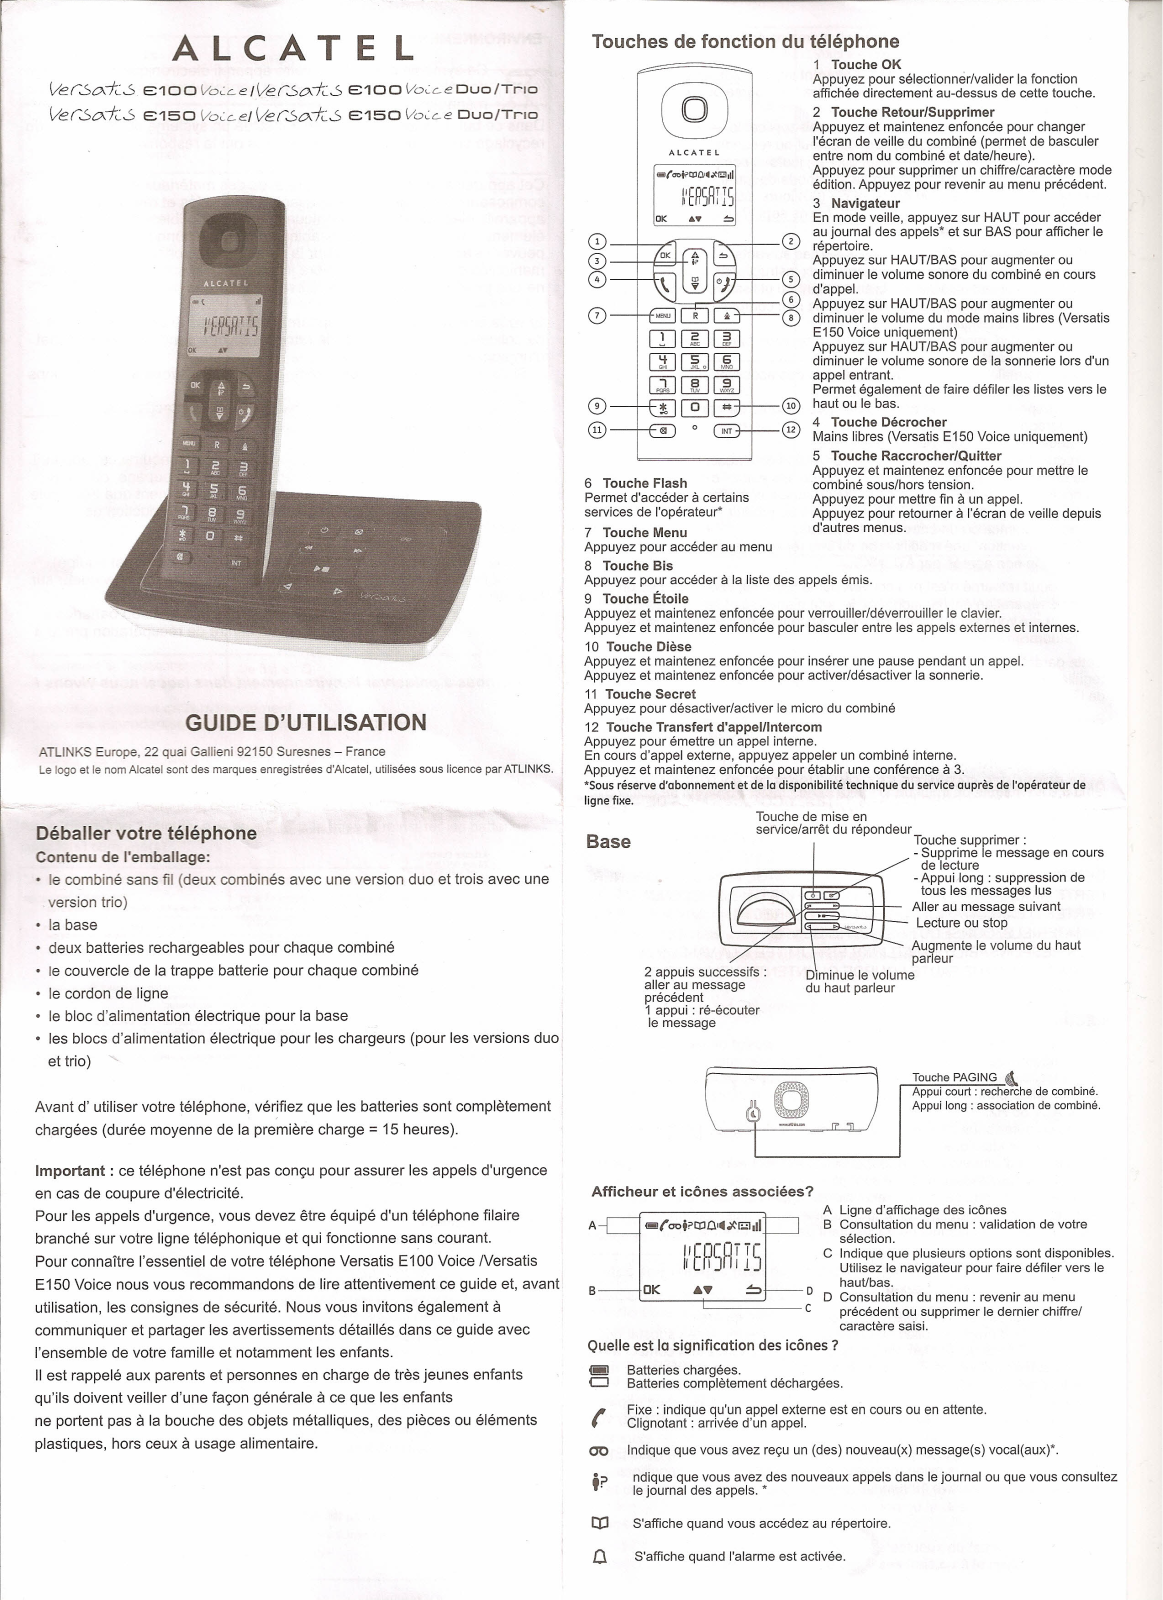 Alcatel VERSATIS E150 Voice, VERSATIS E150 Voice DUO, VERSATIS E150 Voice TRIO, VERSATIS E100 Voice, VERSATIS E100 Voice DUO User Manual